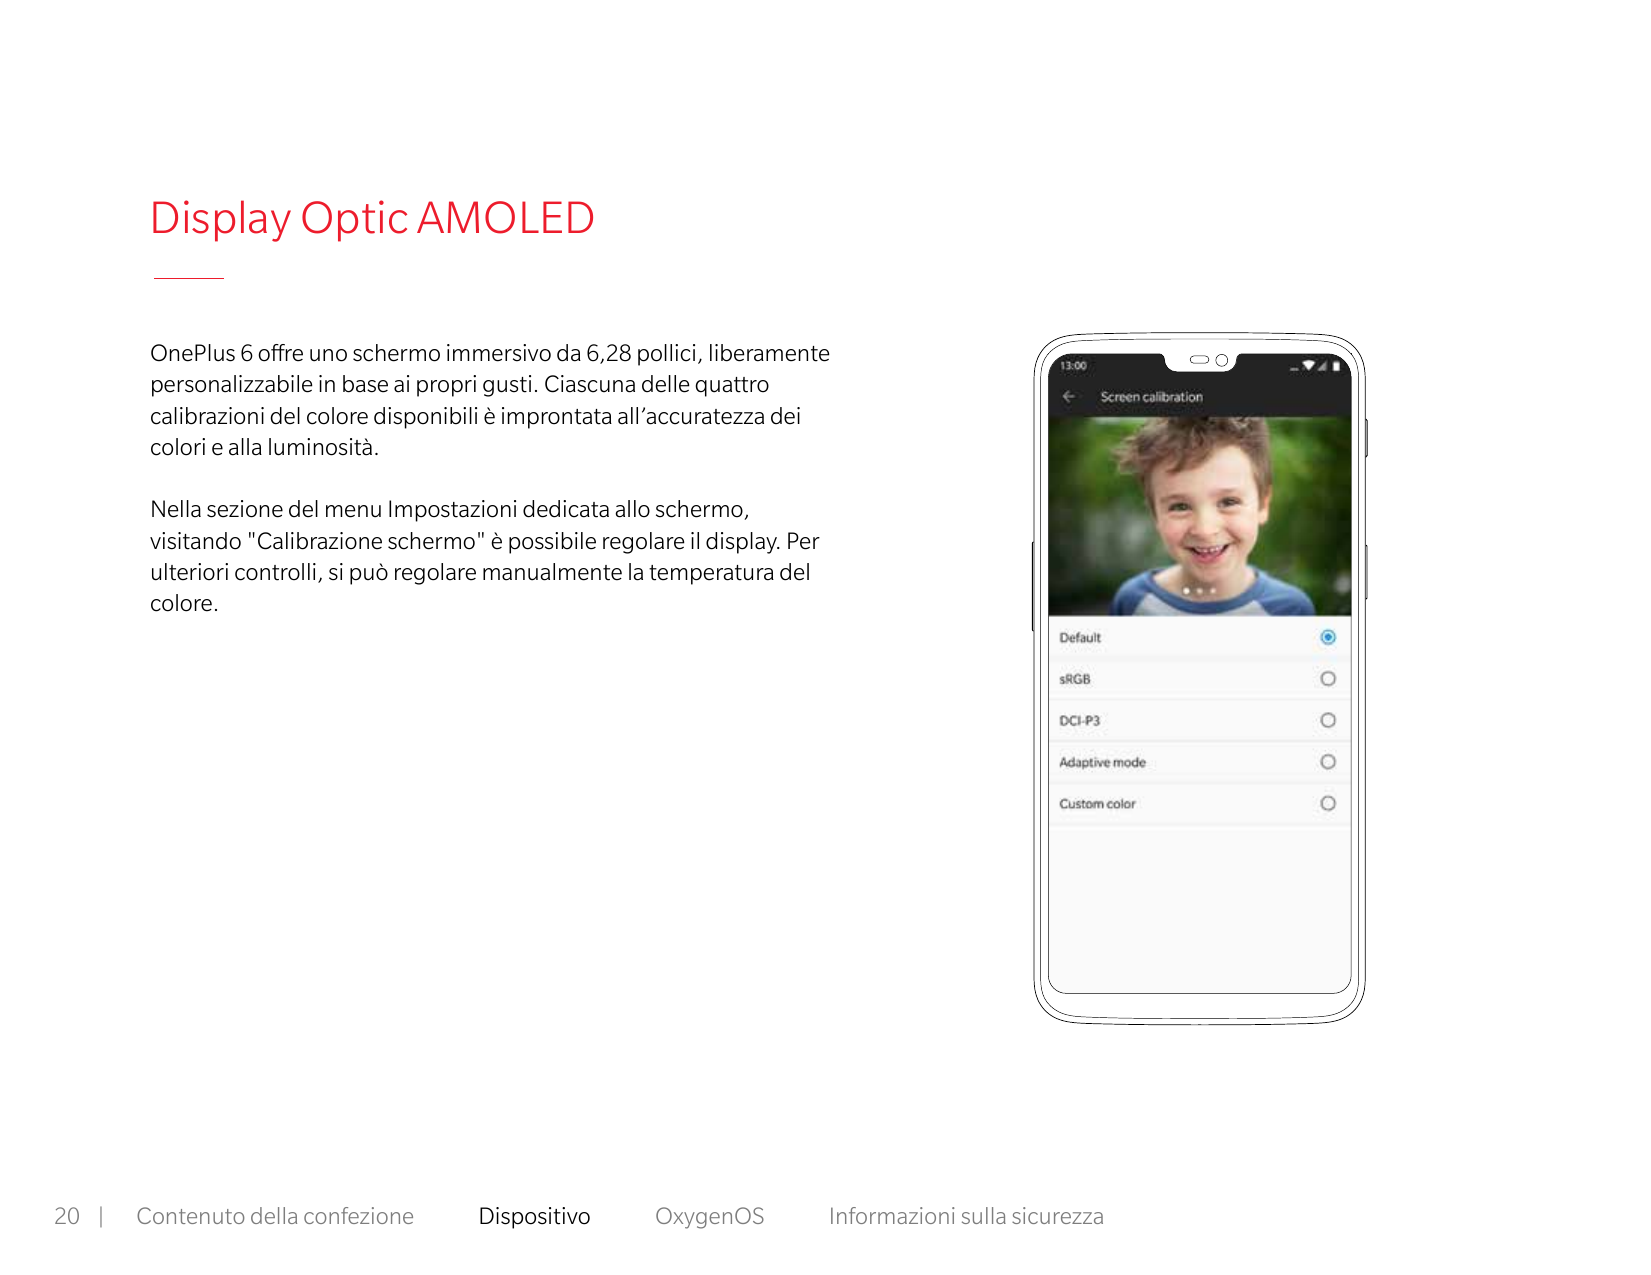 Display Optic AMOLEDOnePlus 6 offre uno schermo immersivo da 6,28 pollici, liberamentepersonalizzabile in base ai propri gusti. 